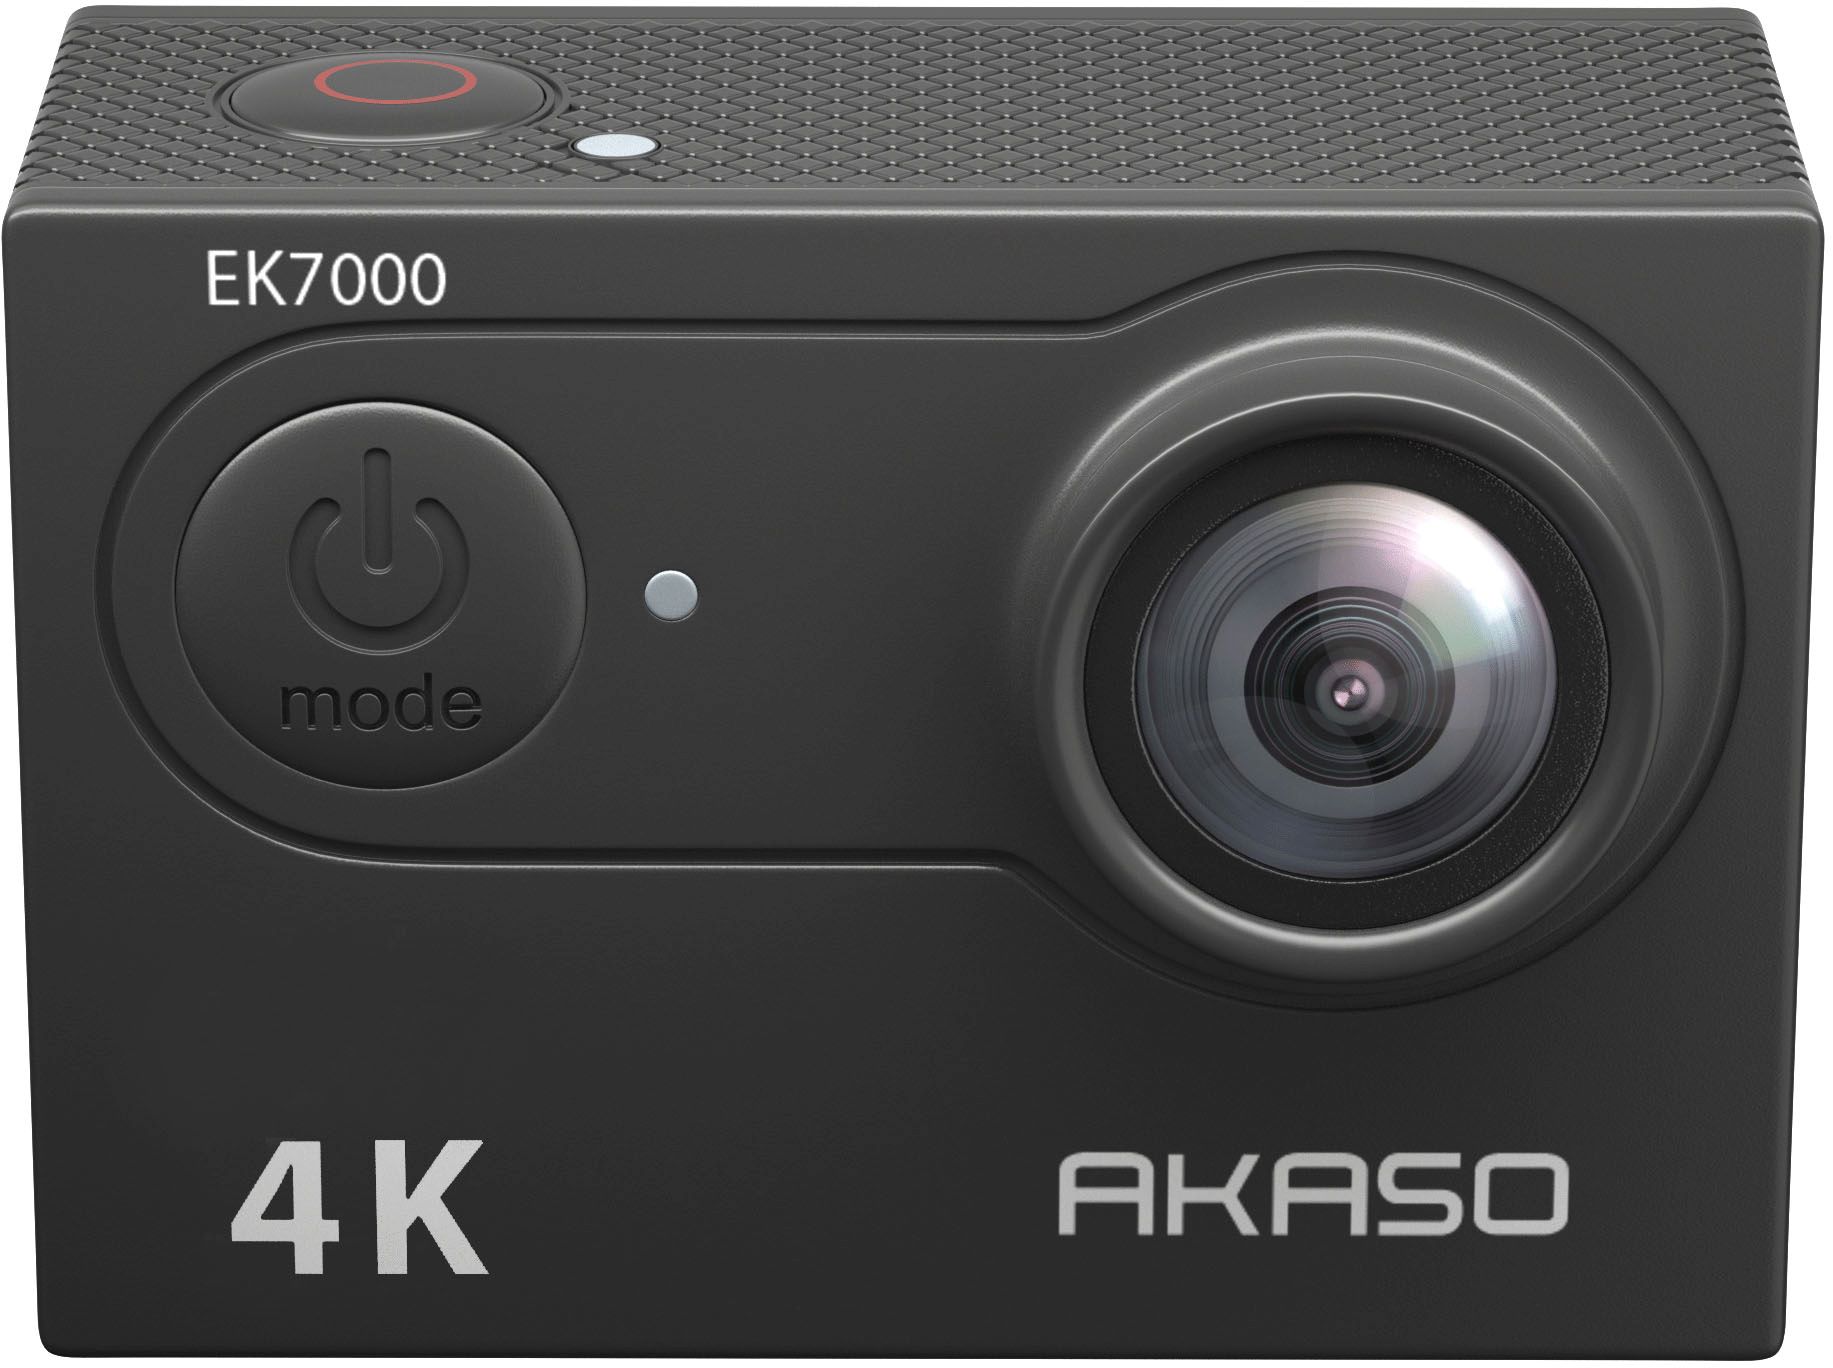 Akaso Ek7000 4K Action Camera: How To Open Battery Door